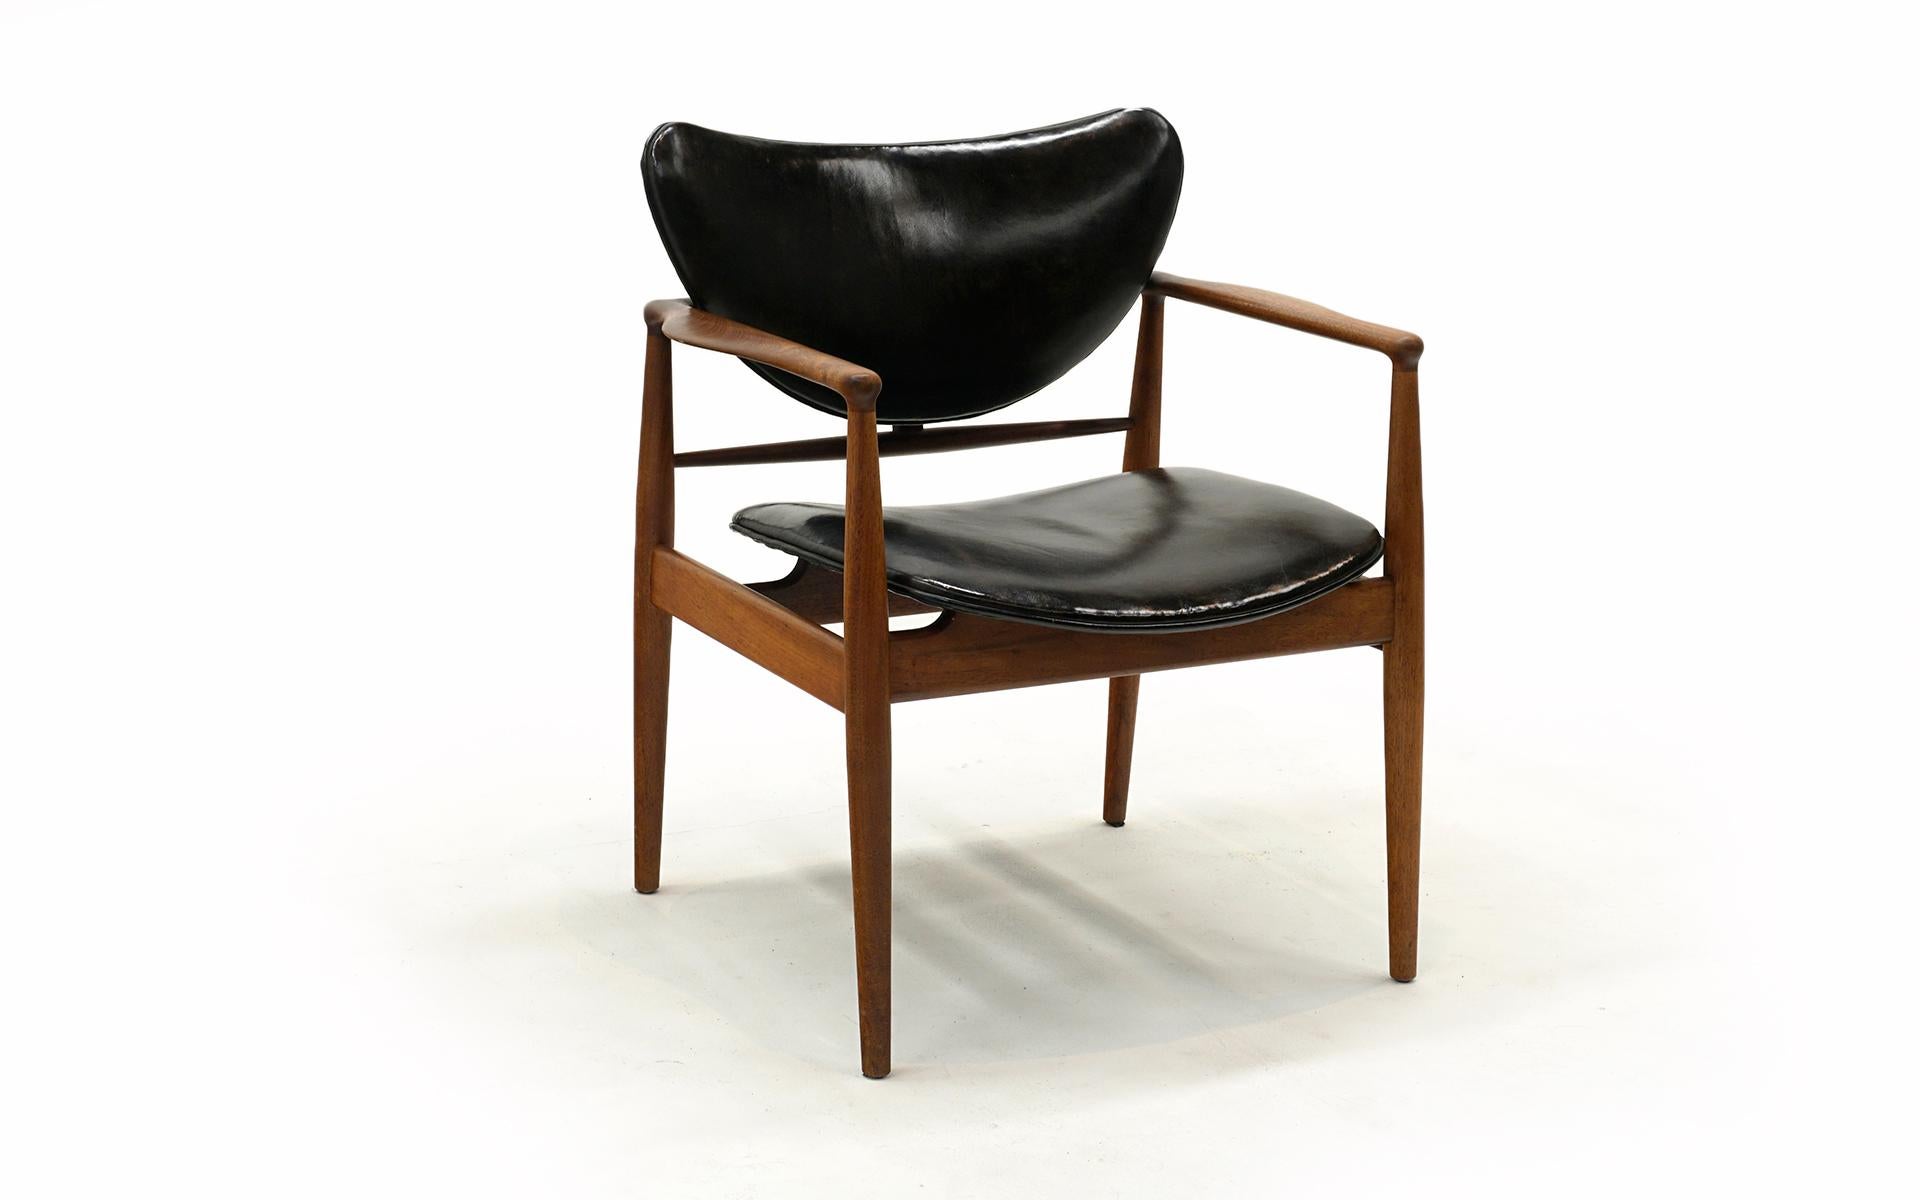 Scandinavian Modern Original Finn Juhl Model 48 Chair for Baker. Black Leather, Teak Frame. Signed.